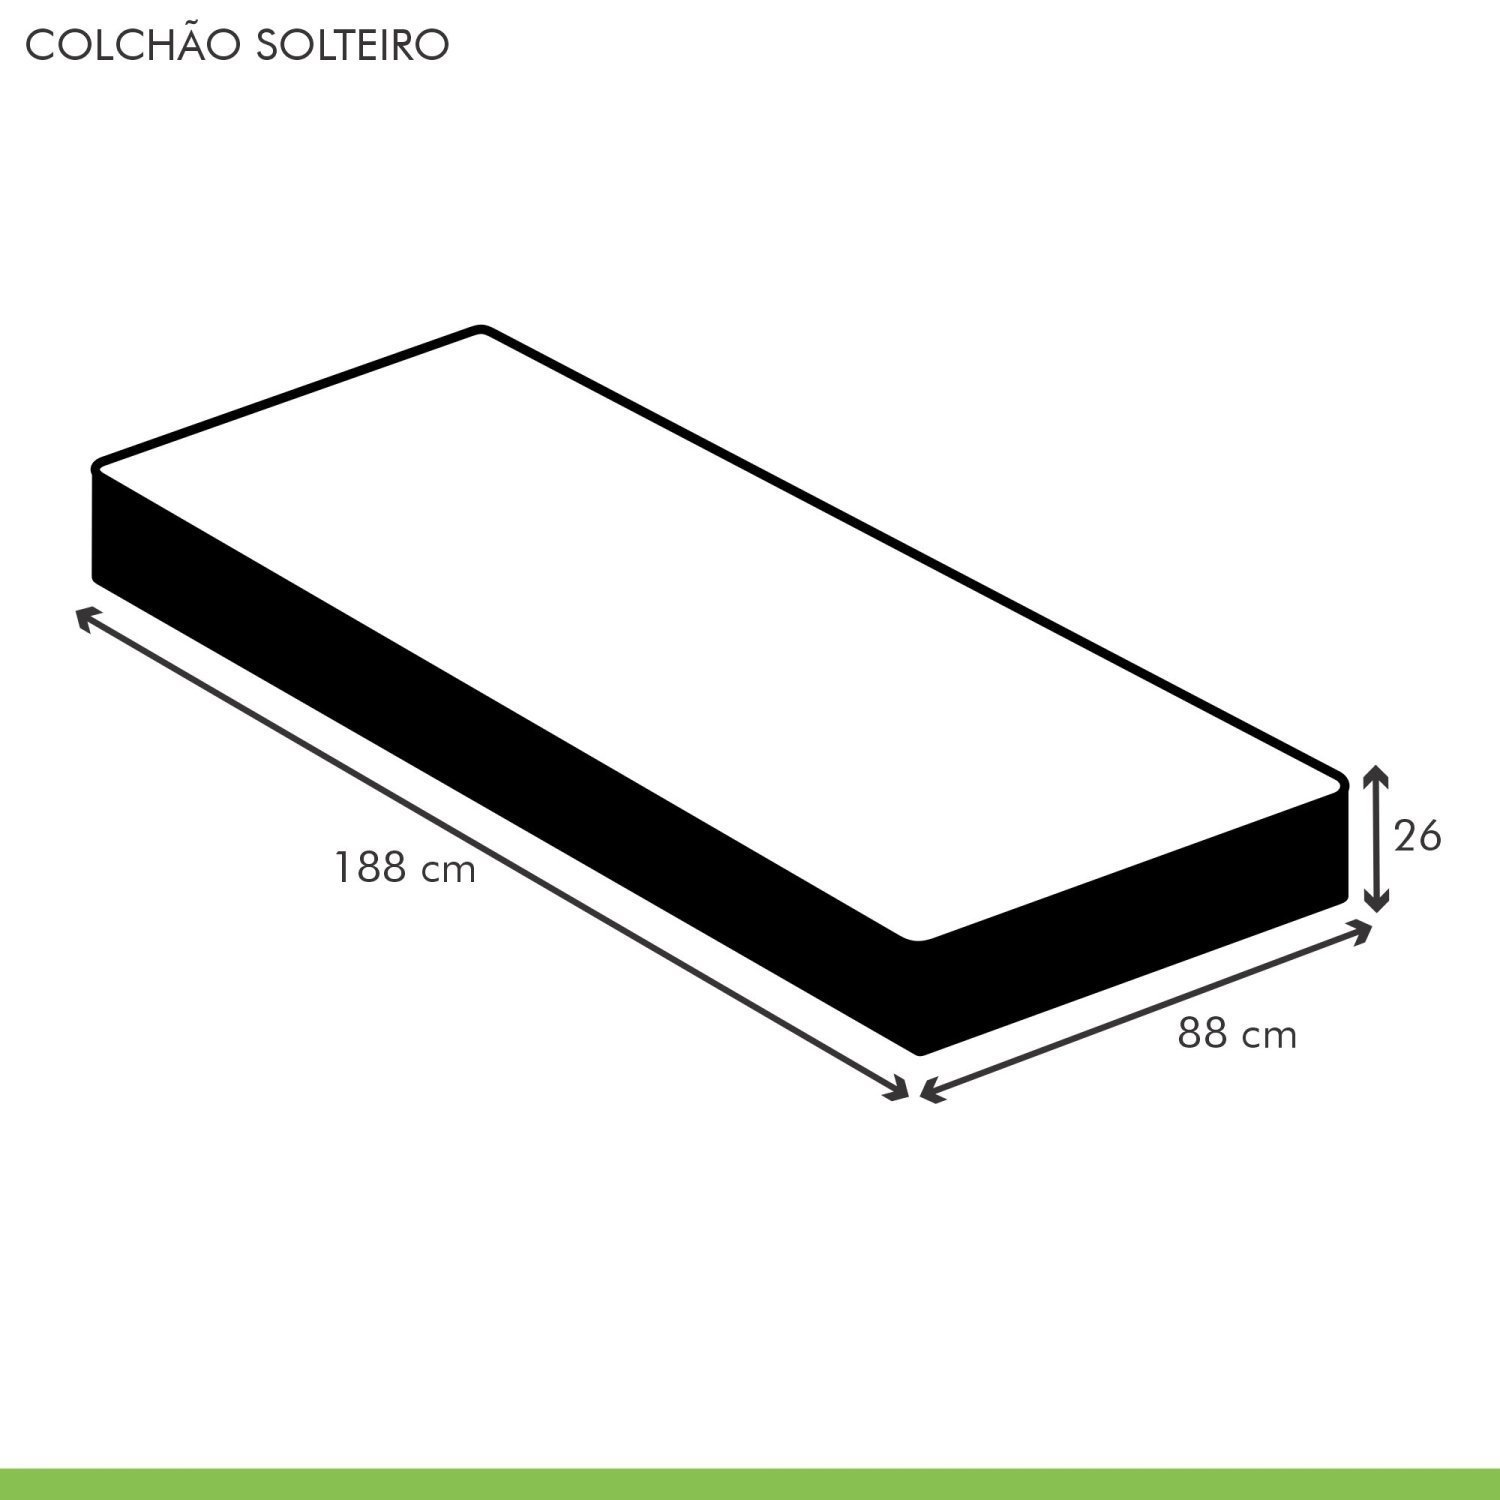 Colchão Solteiro Quality D33 Duoface 26x88x188cm  - 6